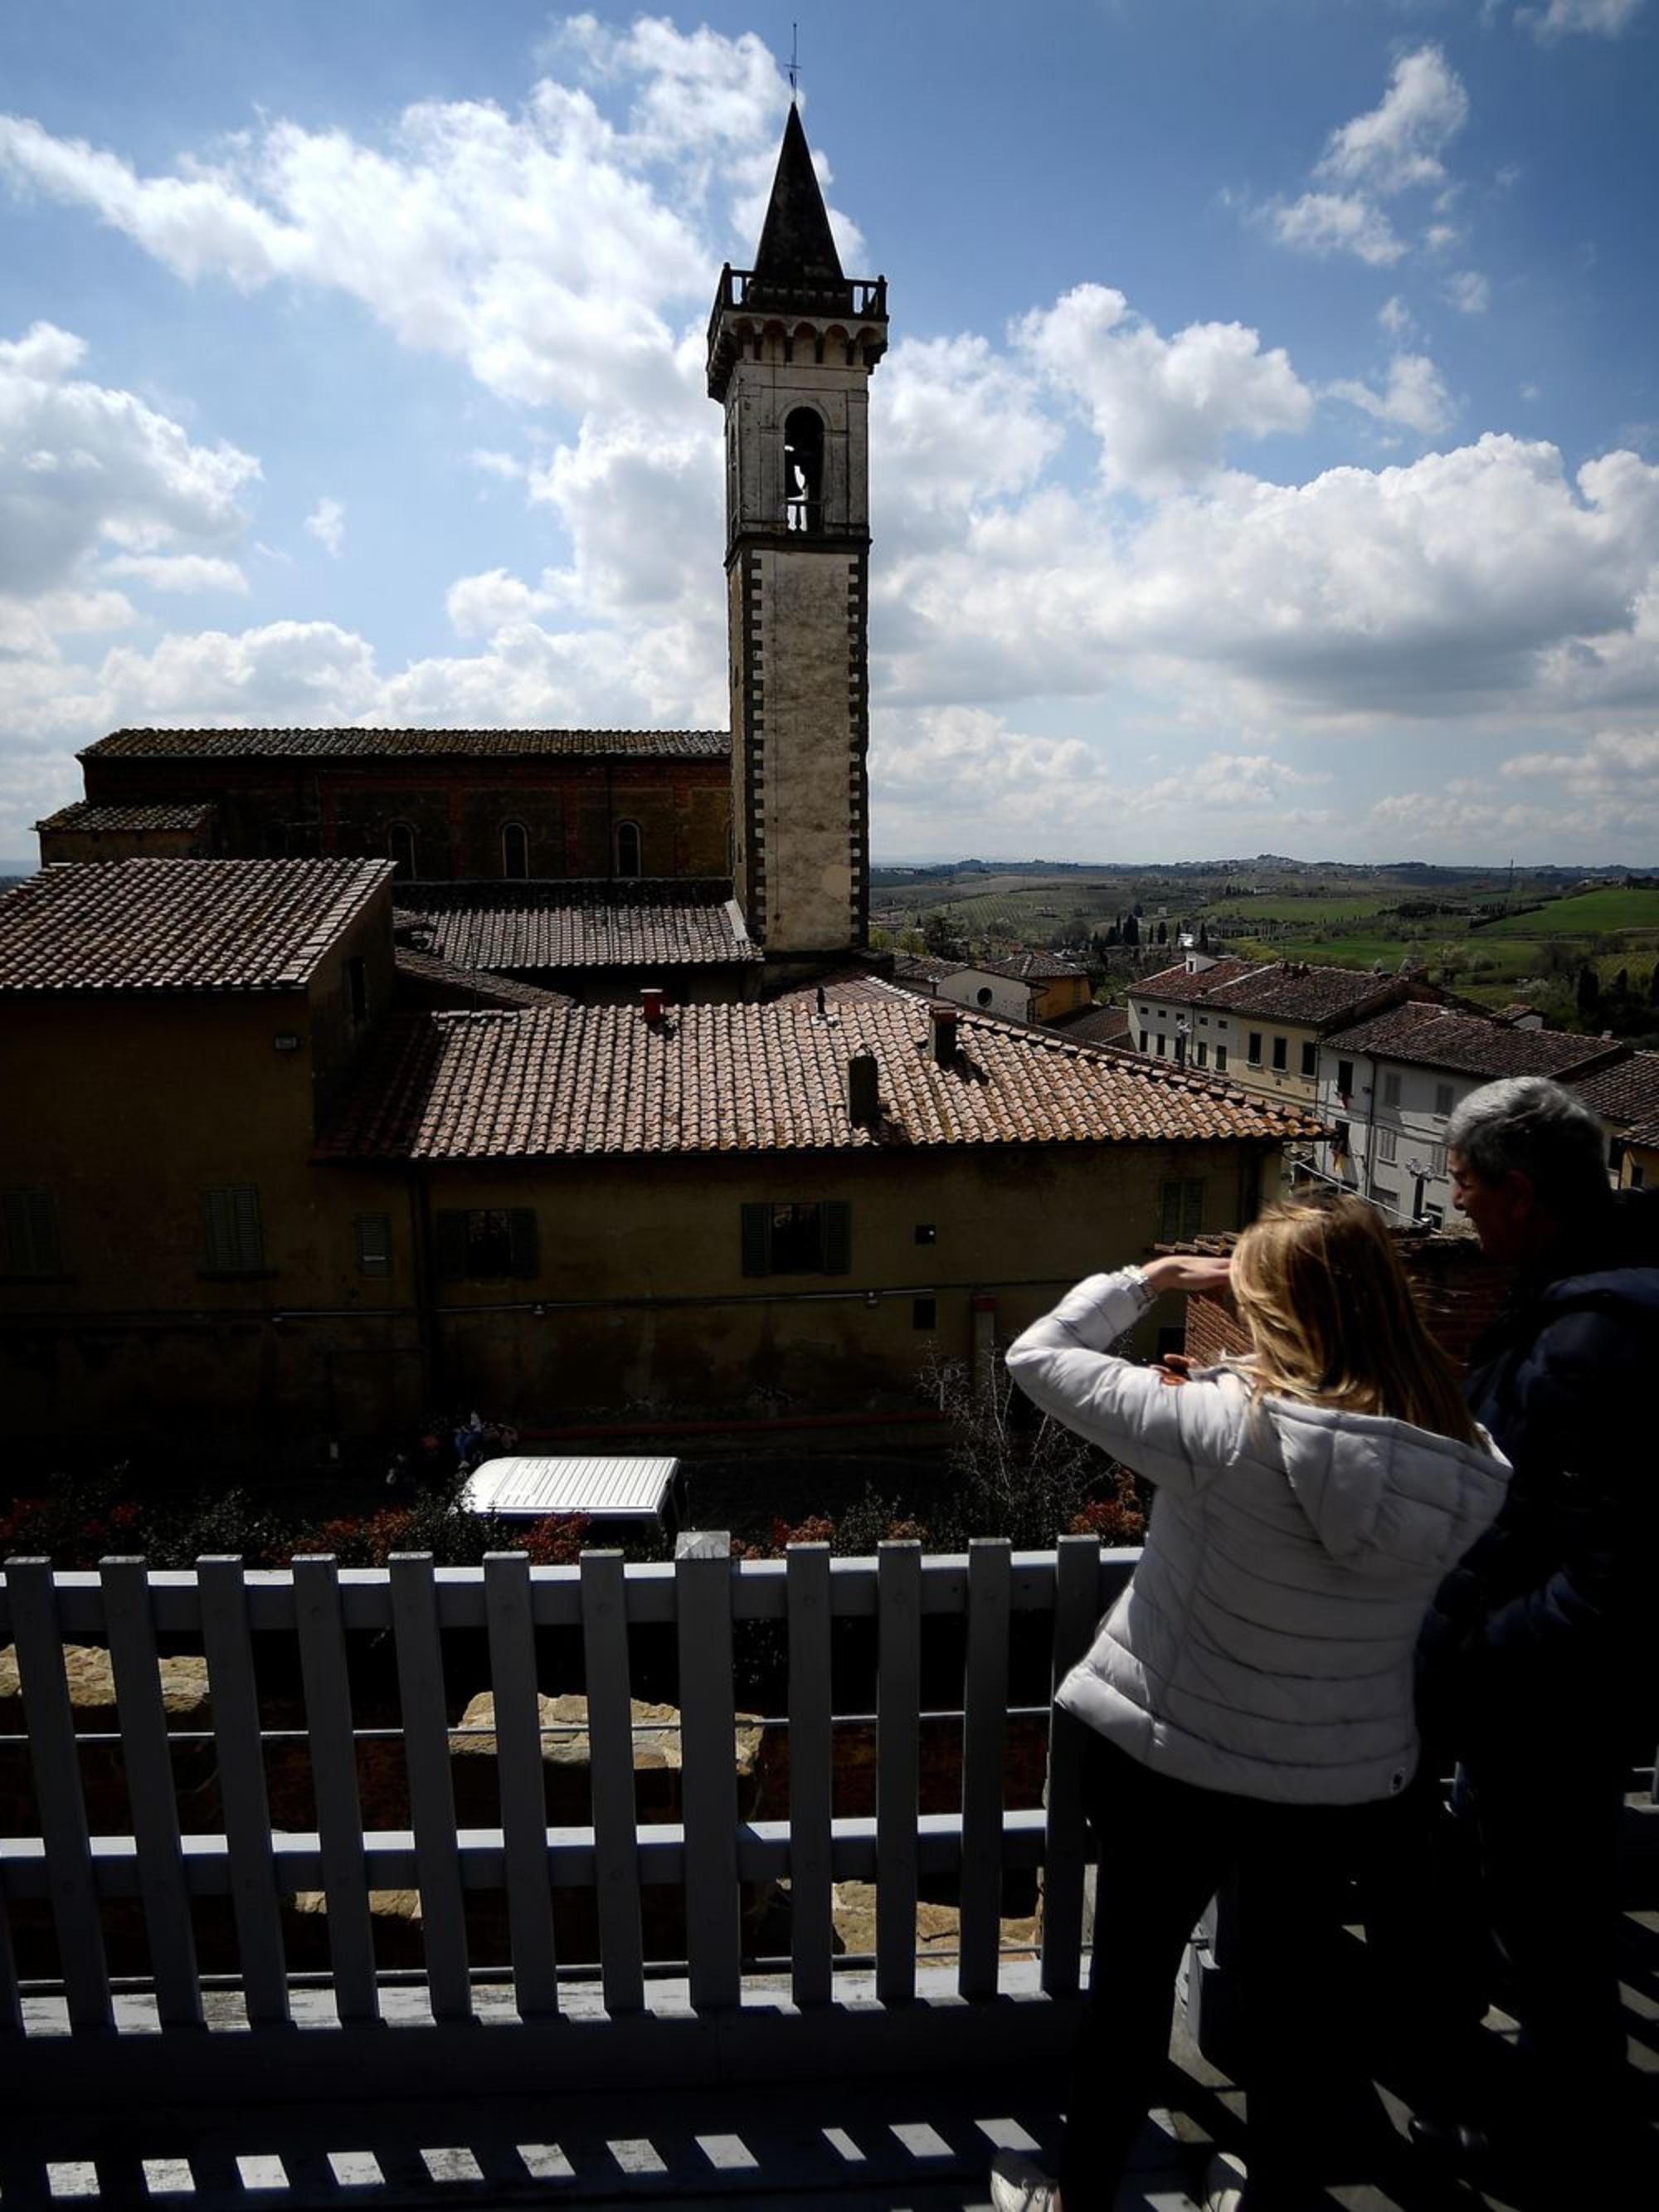 Toscane: la ville natale de Léonard de Vinci rappelle son influence sur l'oeuvre du peintre génial